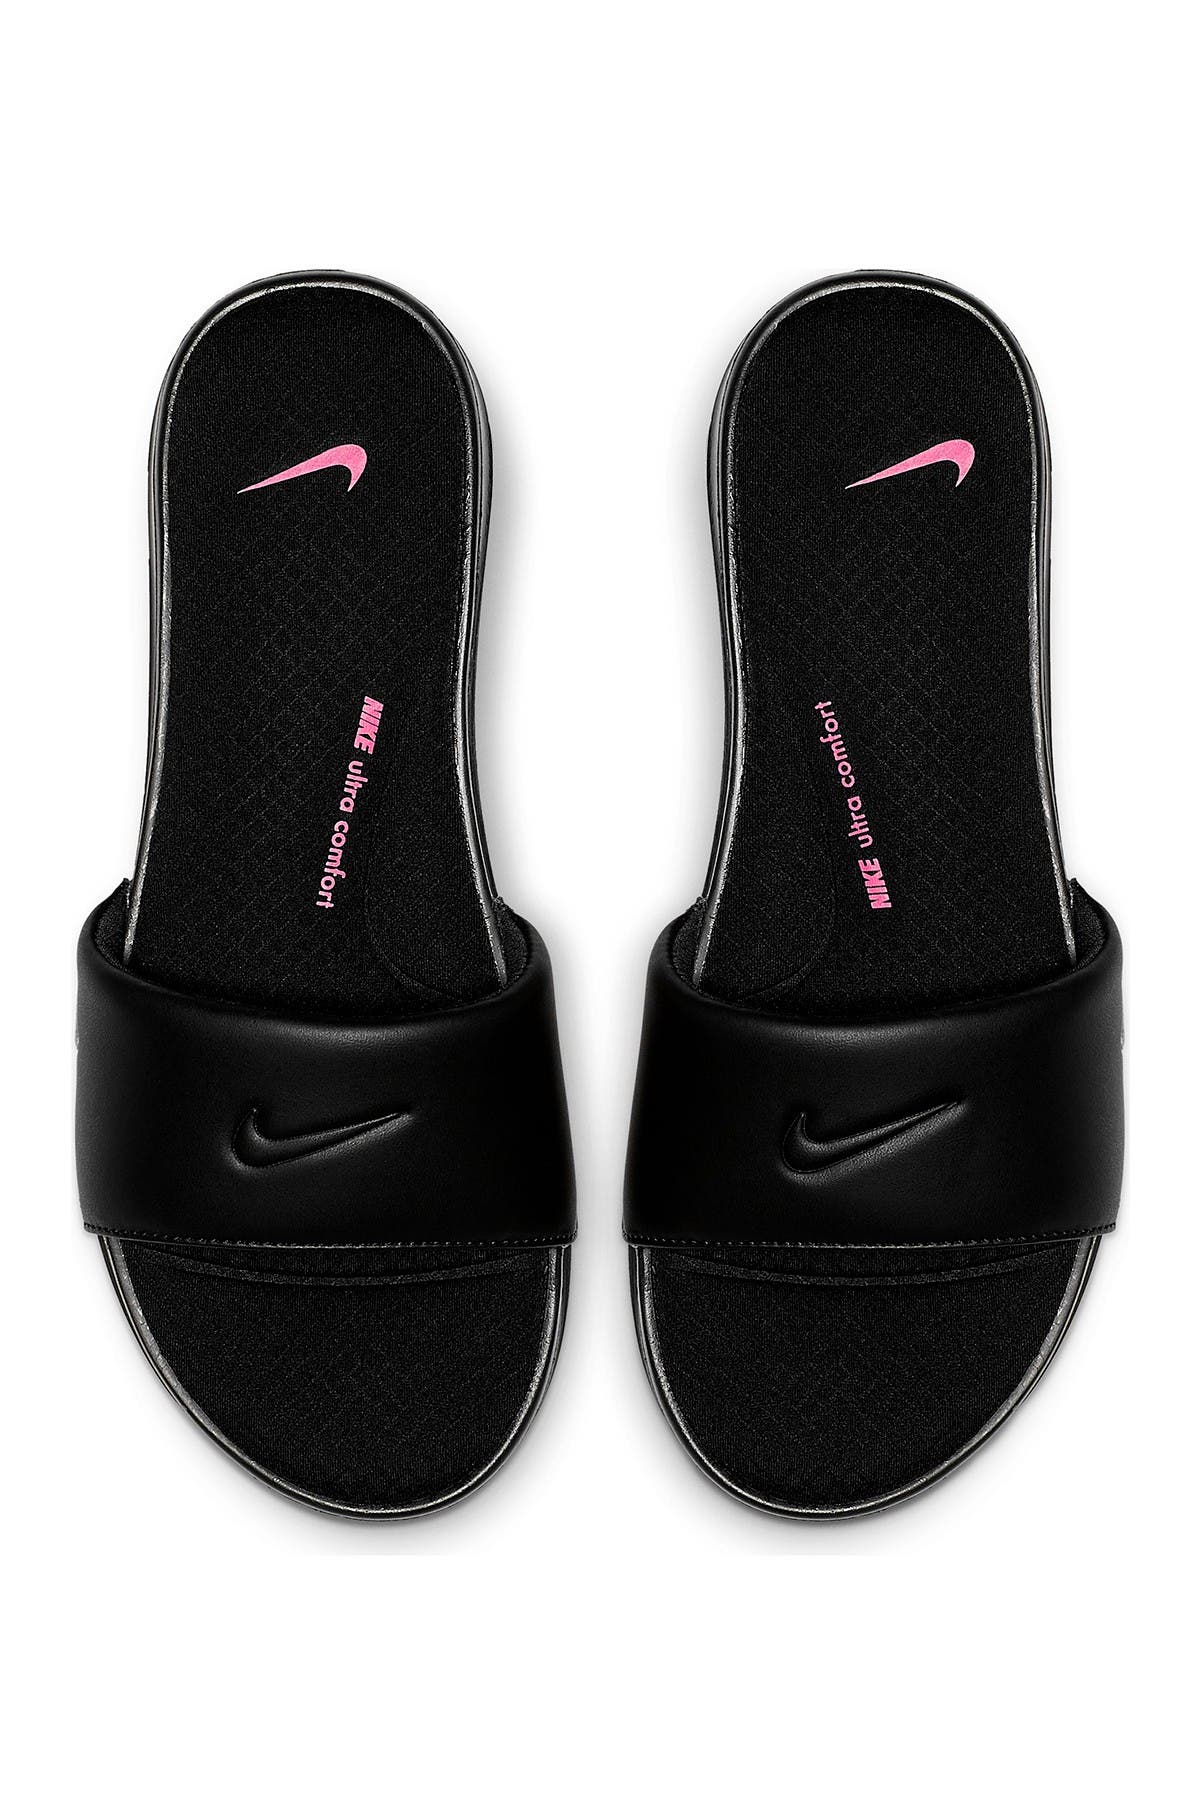 nike women's ultra comfort slide sandal